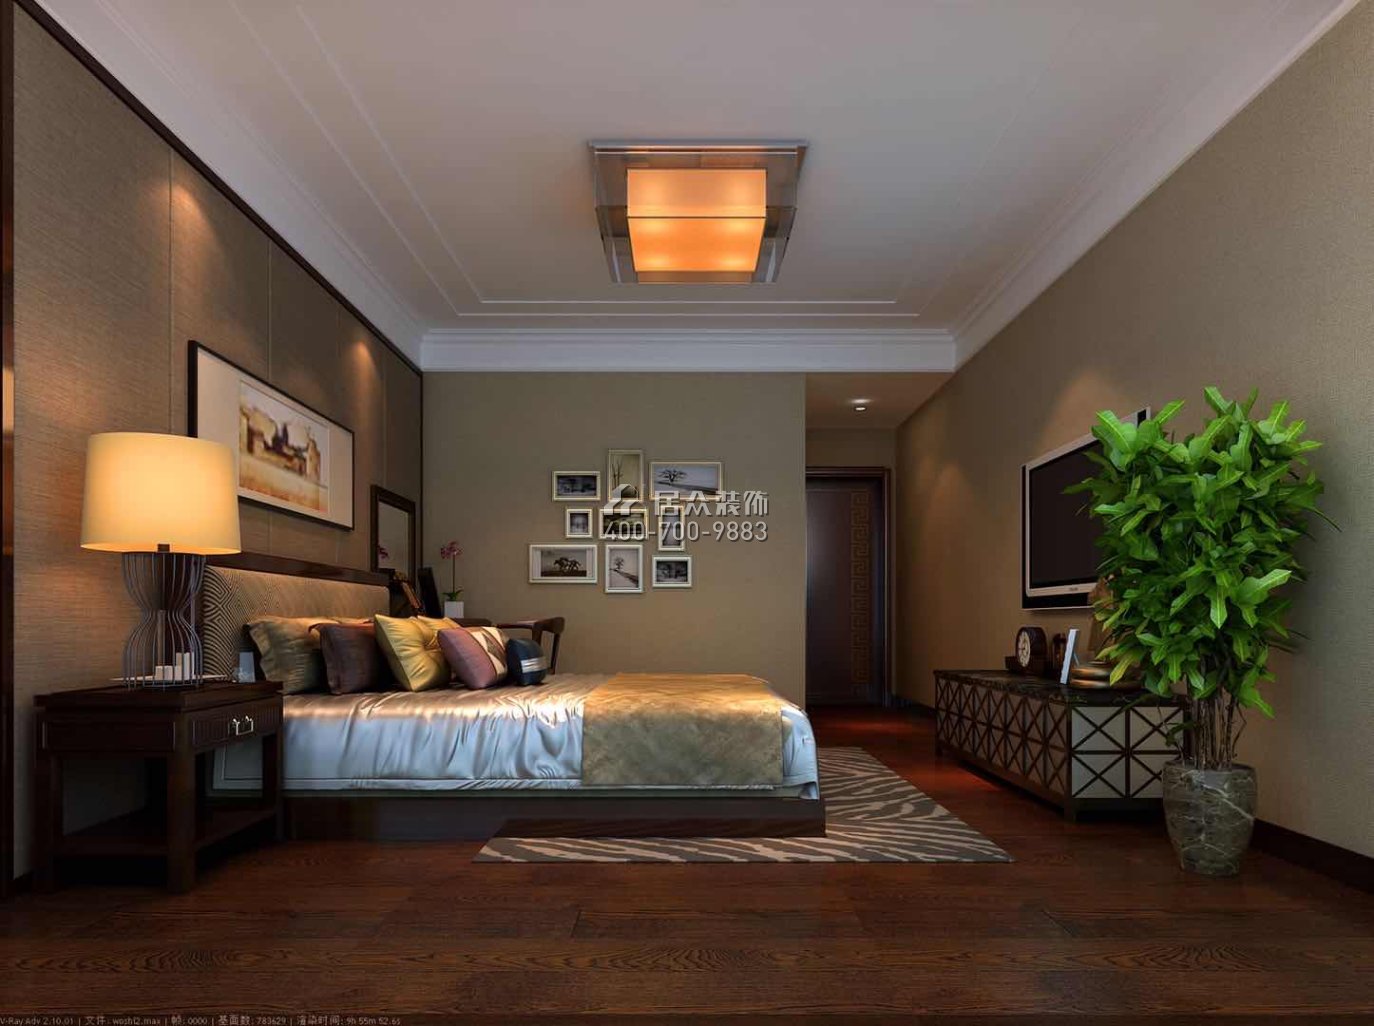 泰宁花园210平方米中式风格平层户型卧室装修效果图